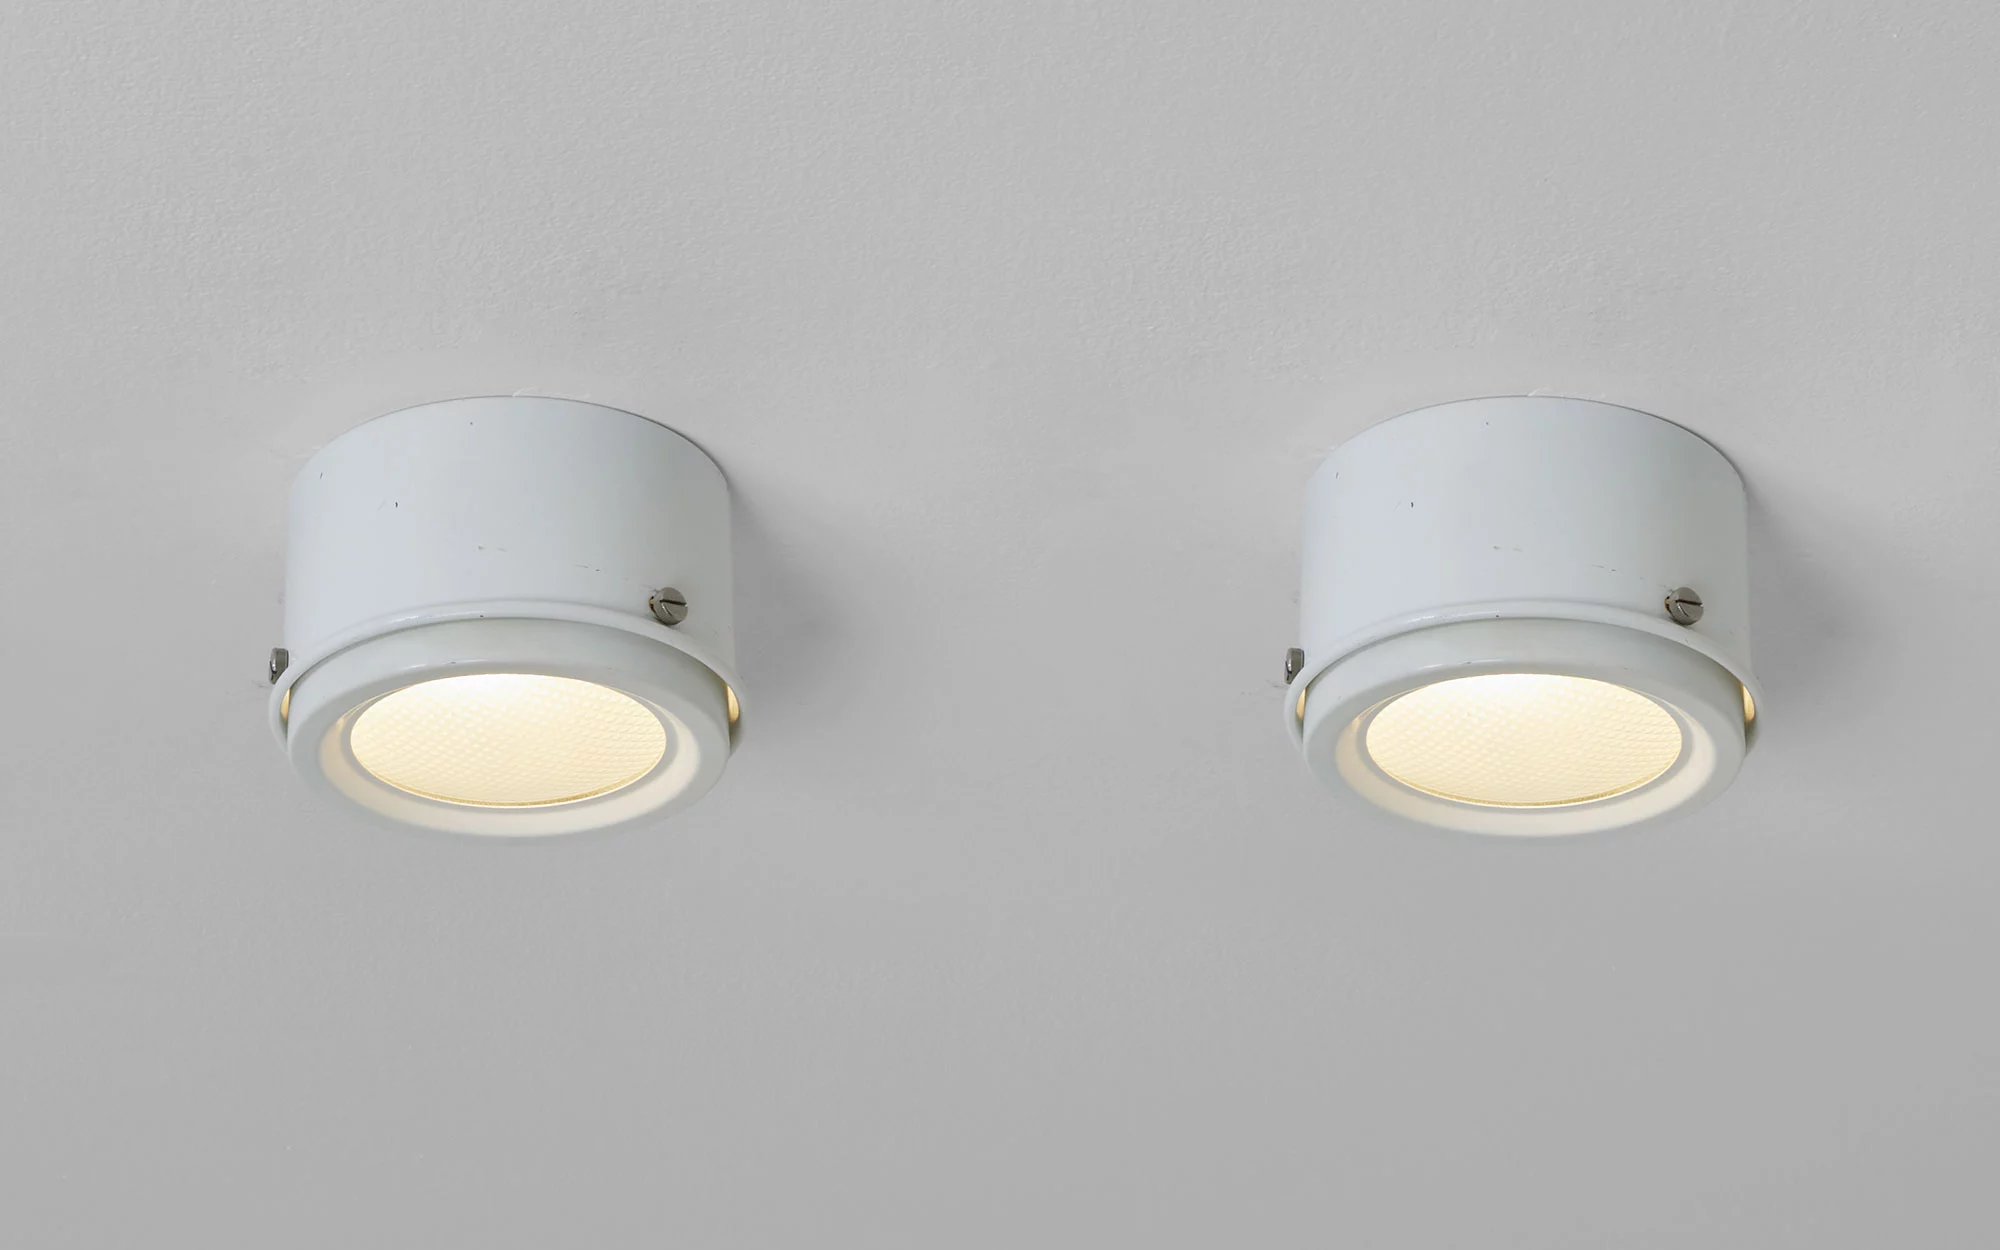 3055/12 (2) (white) - Gino Sarfatti - Ceiling light - Galerie kreo